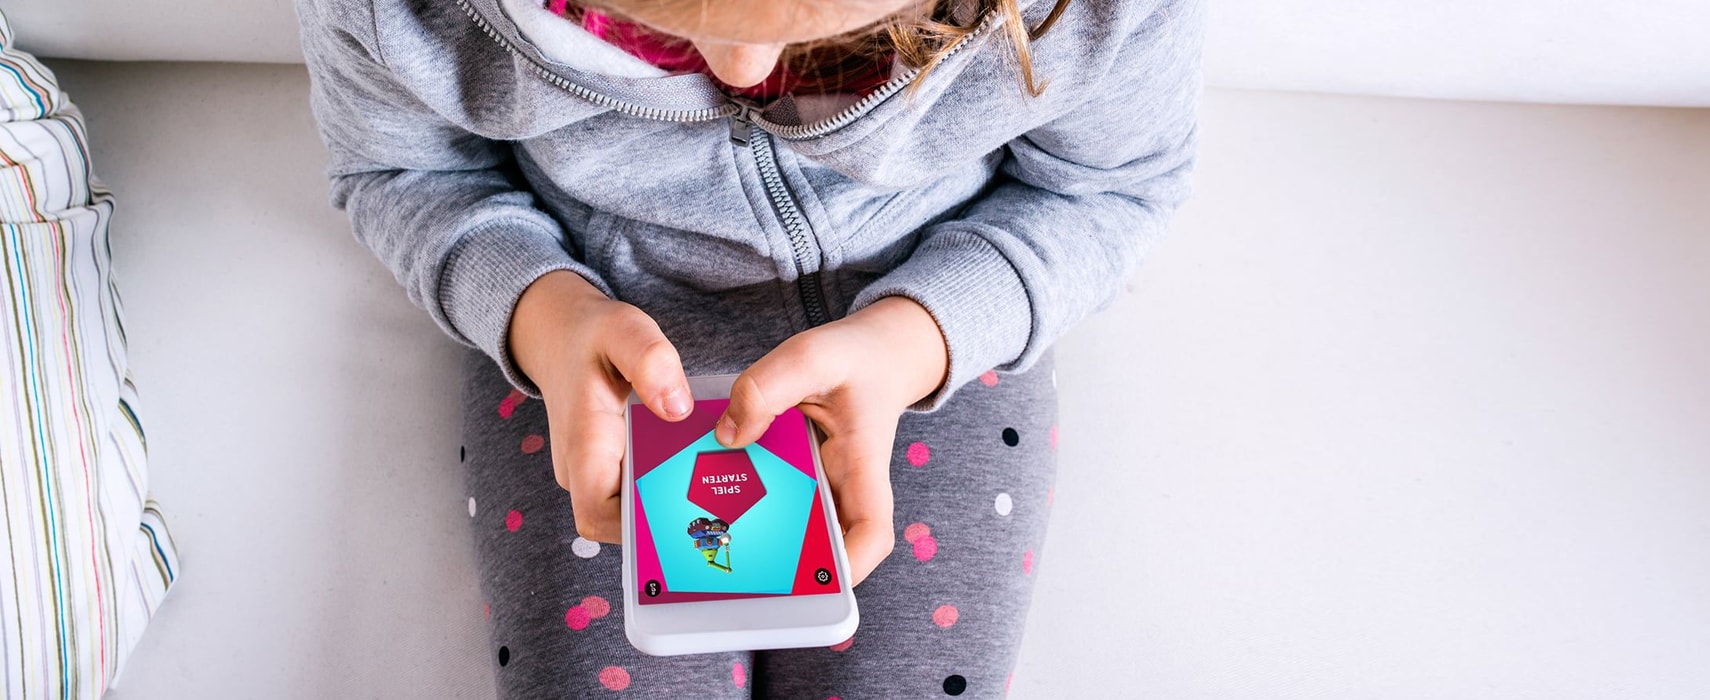 Mädchen spielt mit der experimenta App am Smartphone